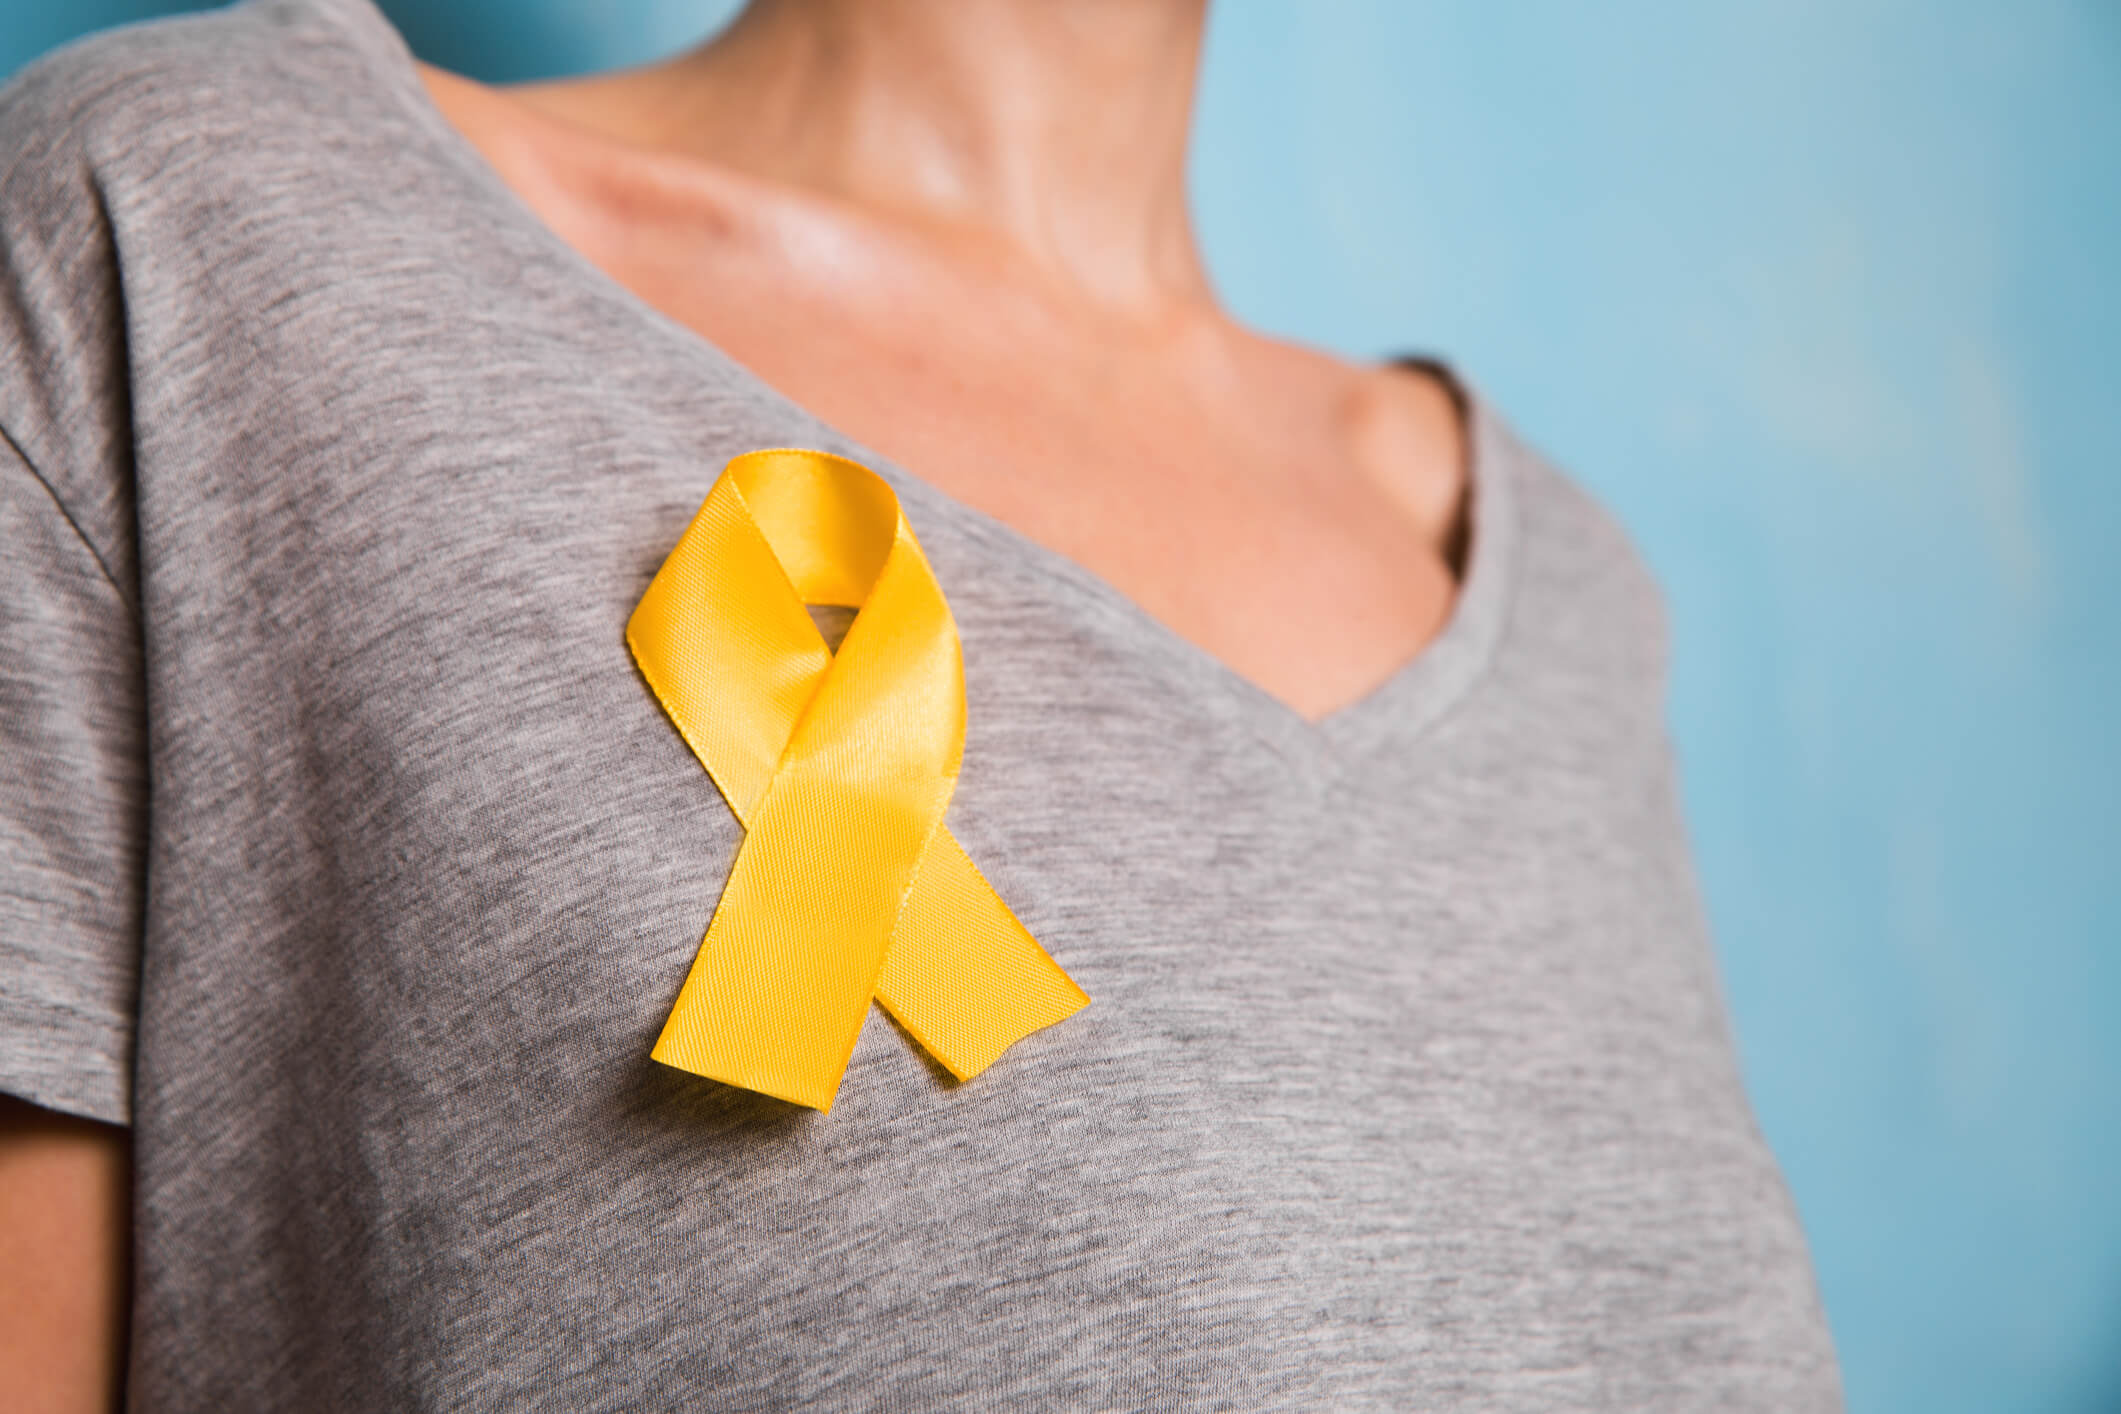 endometriosis awareness ribbon